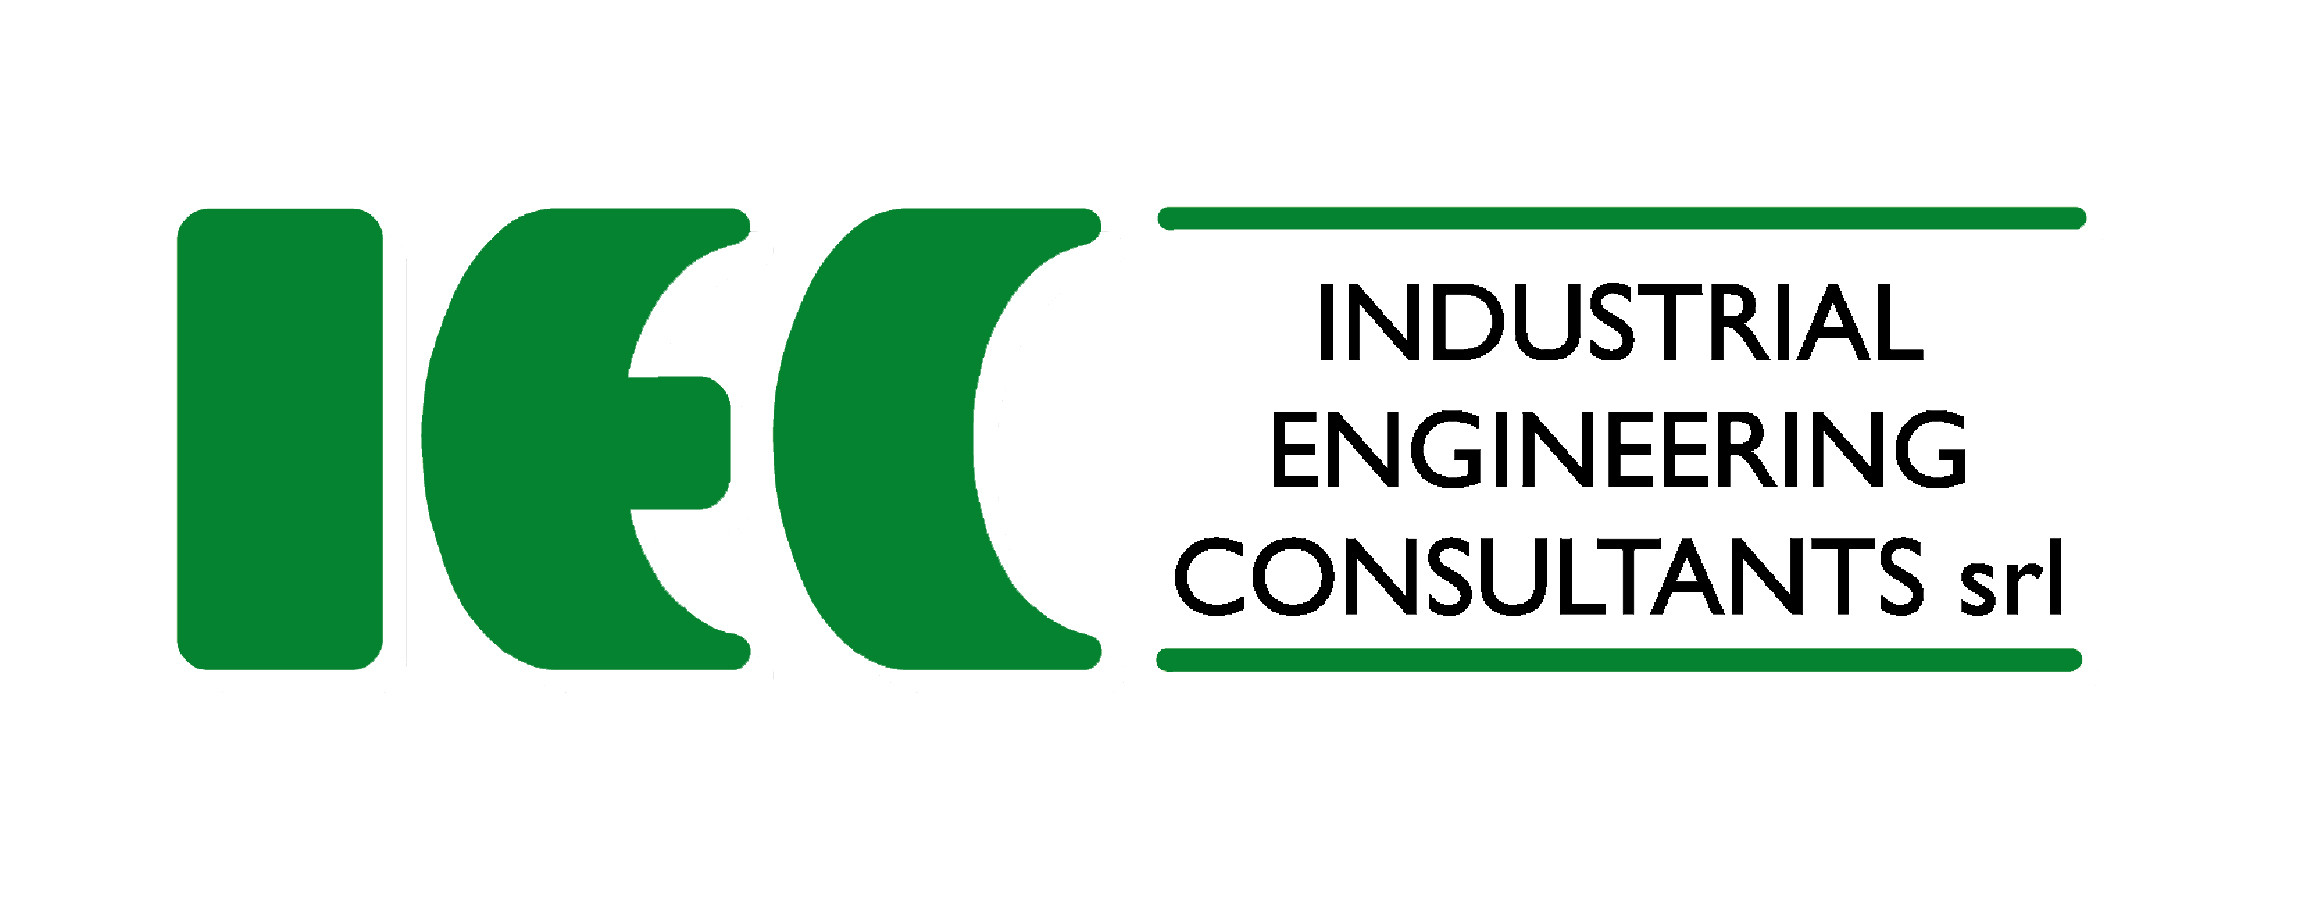 Industrial Engineering Consultants srl